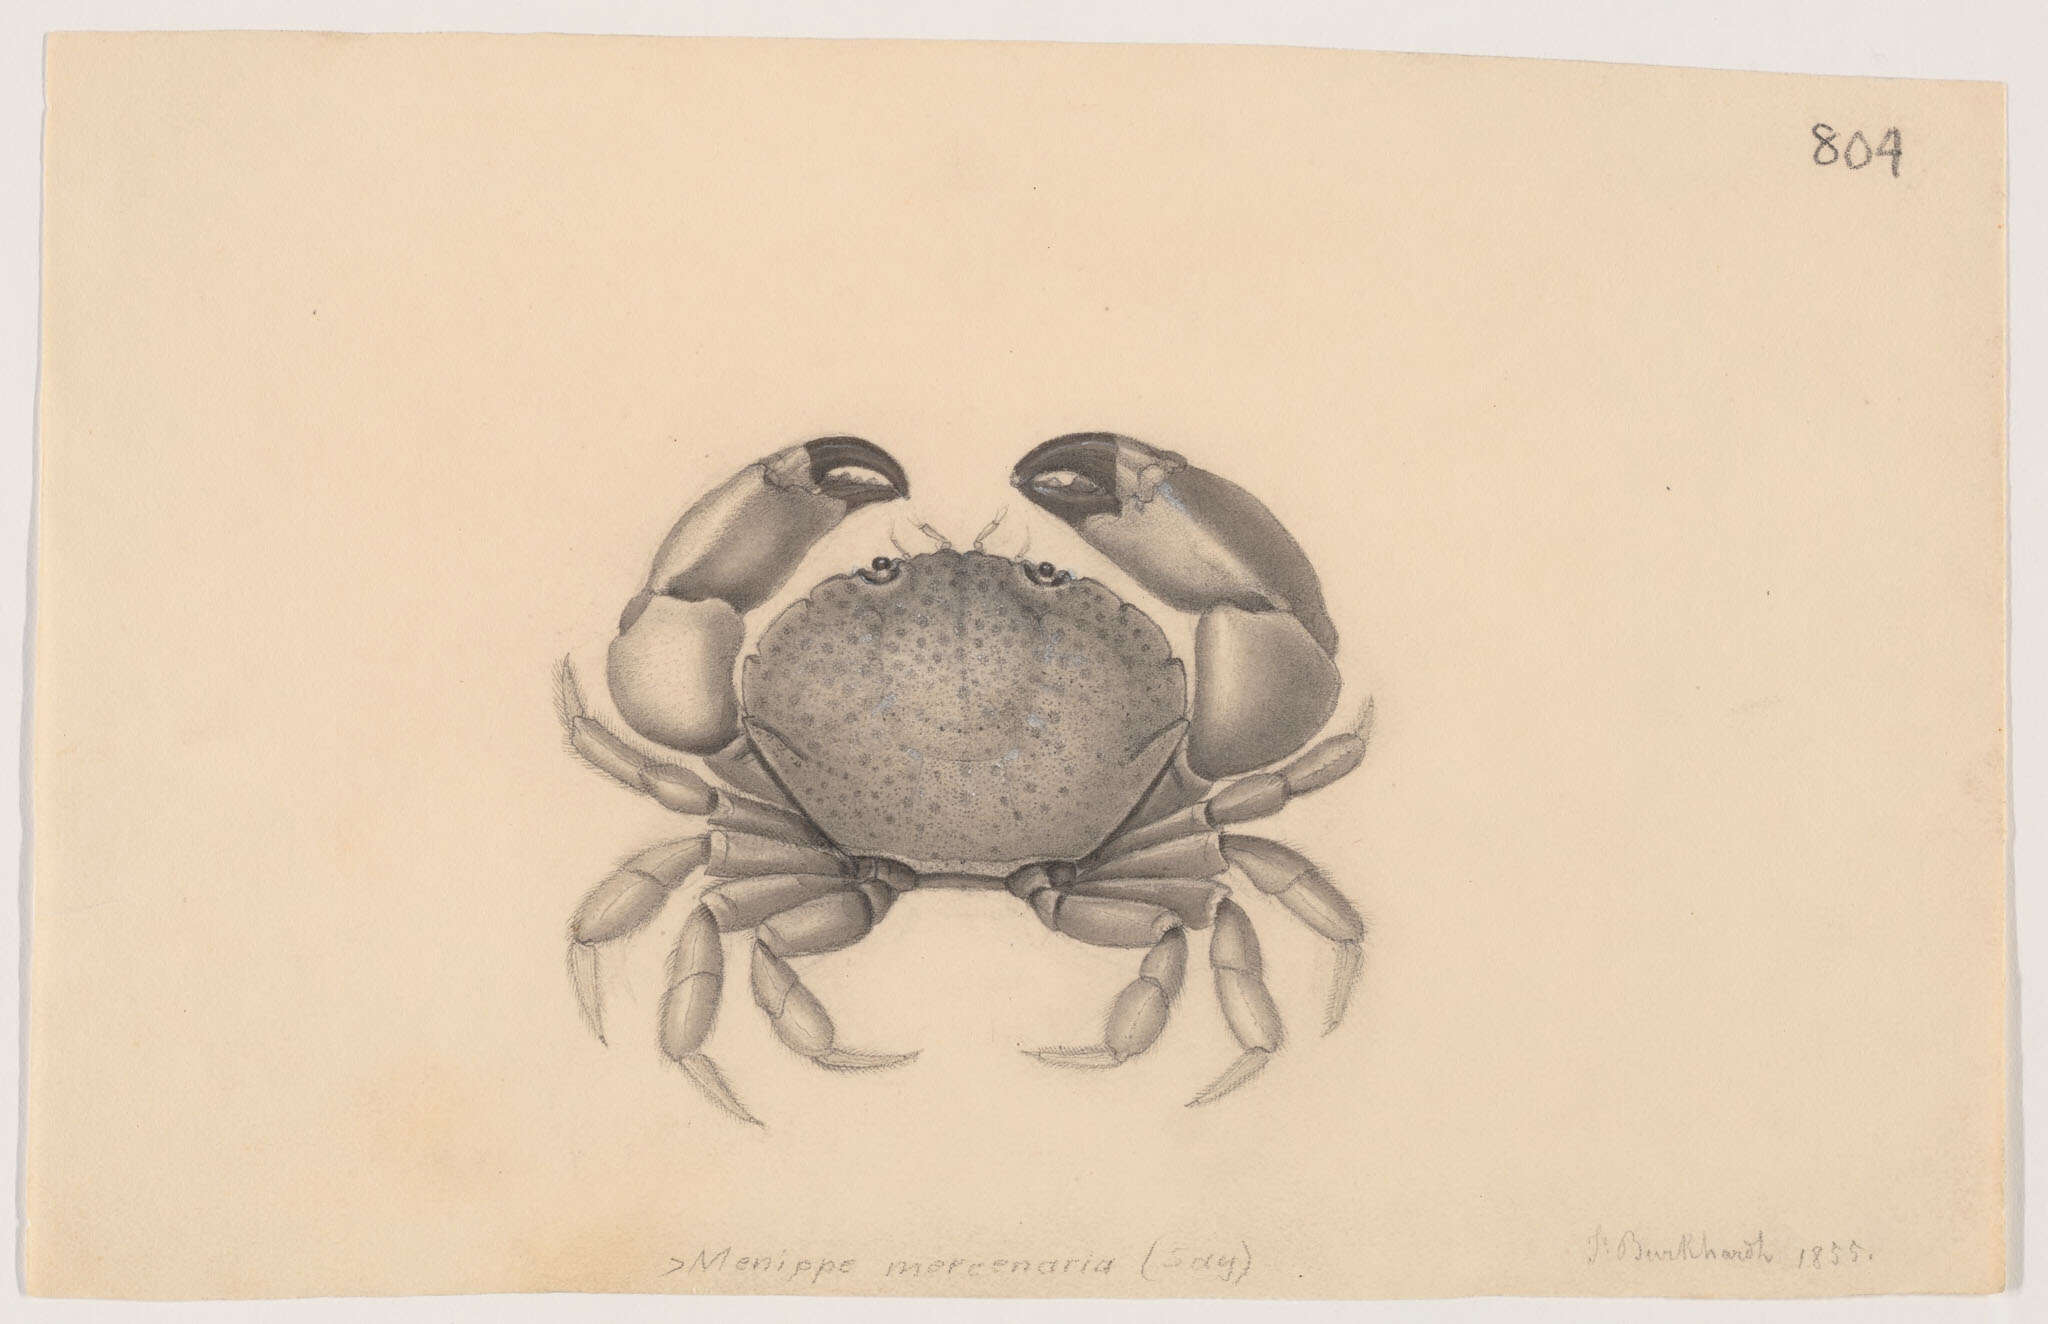 Image of Menippidae Ortmann 1893